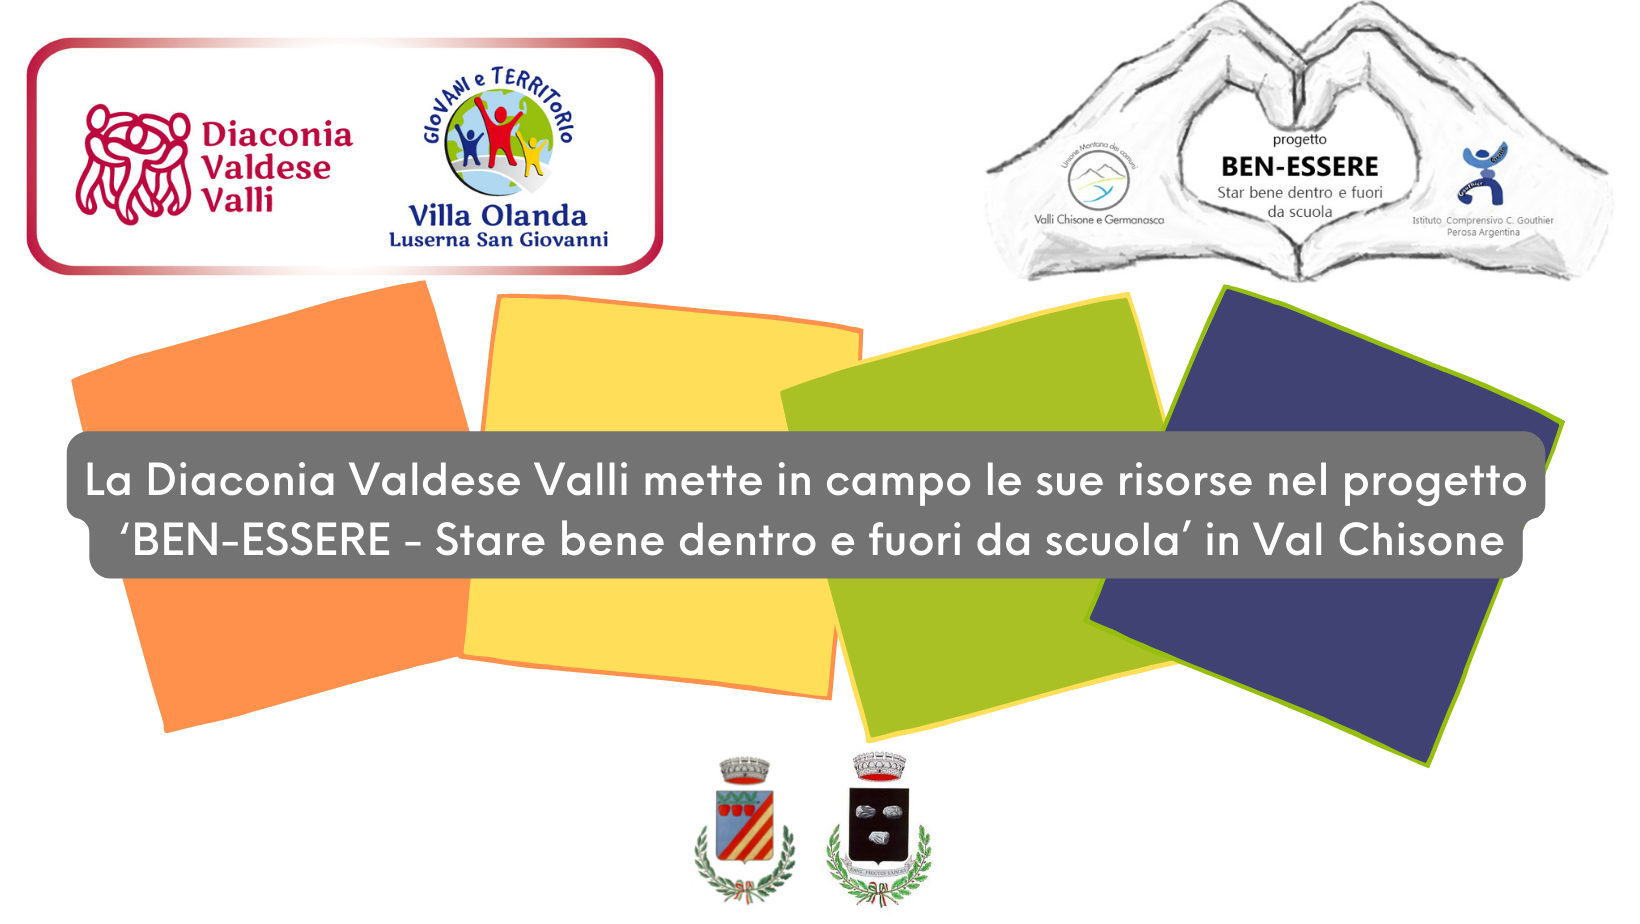 La Diaconia Valdese Valli mette in campo le sue risorse nel progetto 'BEN-ESSERE - Stare bene debtro e fuori da scuola' in Val Chisone